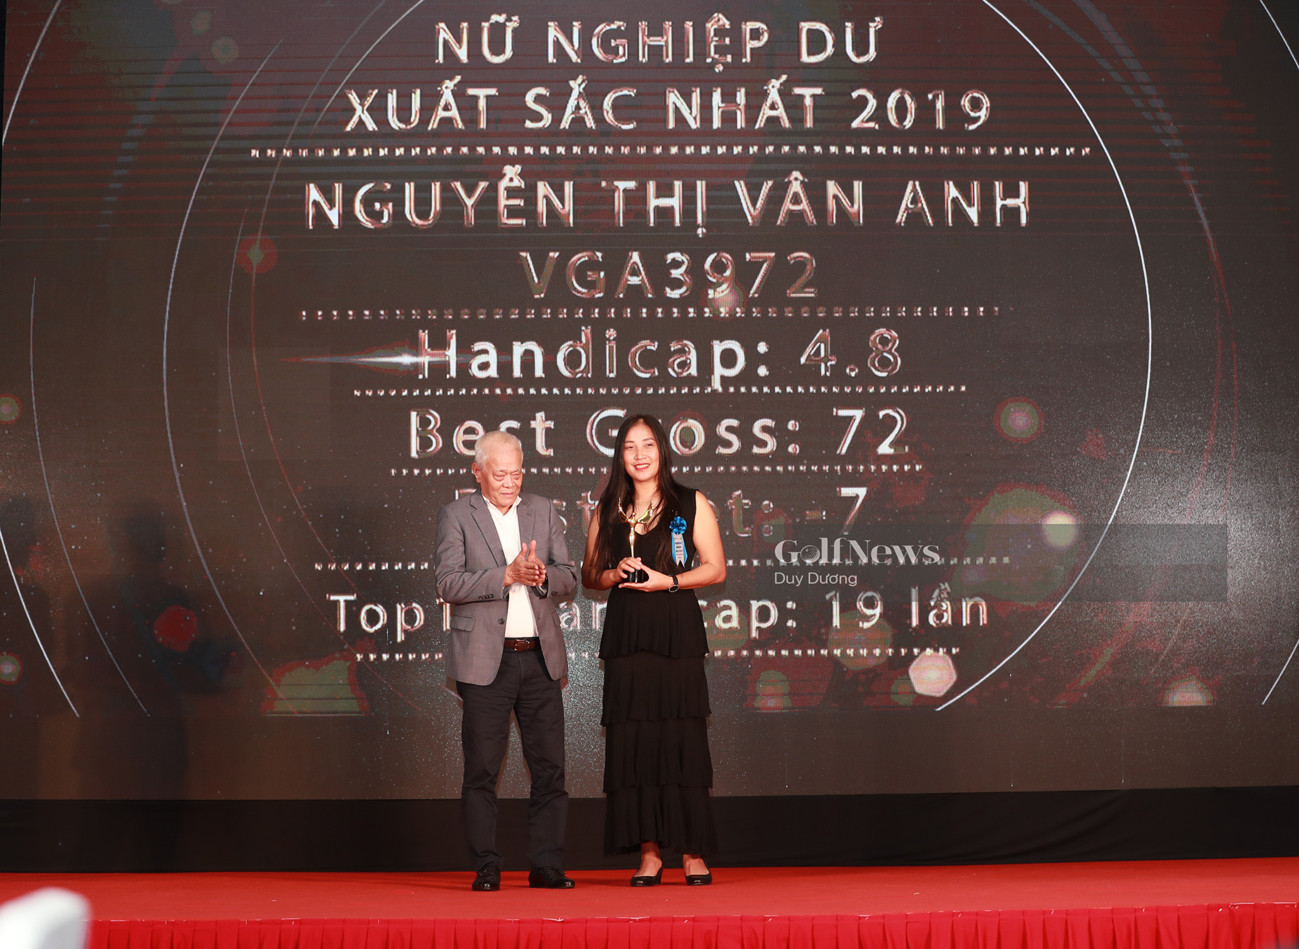 BXH vHandicap tháng 11: Đỗ Hồng Giang quay trở lại vị trí số 1 trên BXH Top Pro, Nguyễn Anh Minh duy trì vị trí dẫn đầu BXH Top Single - Ảnh 3.